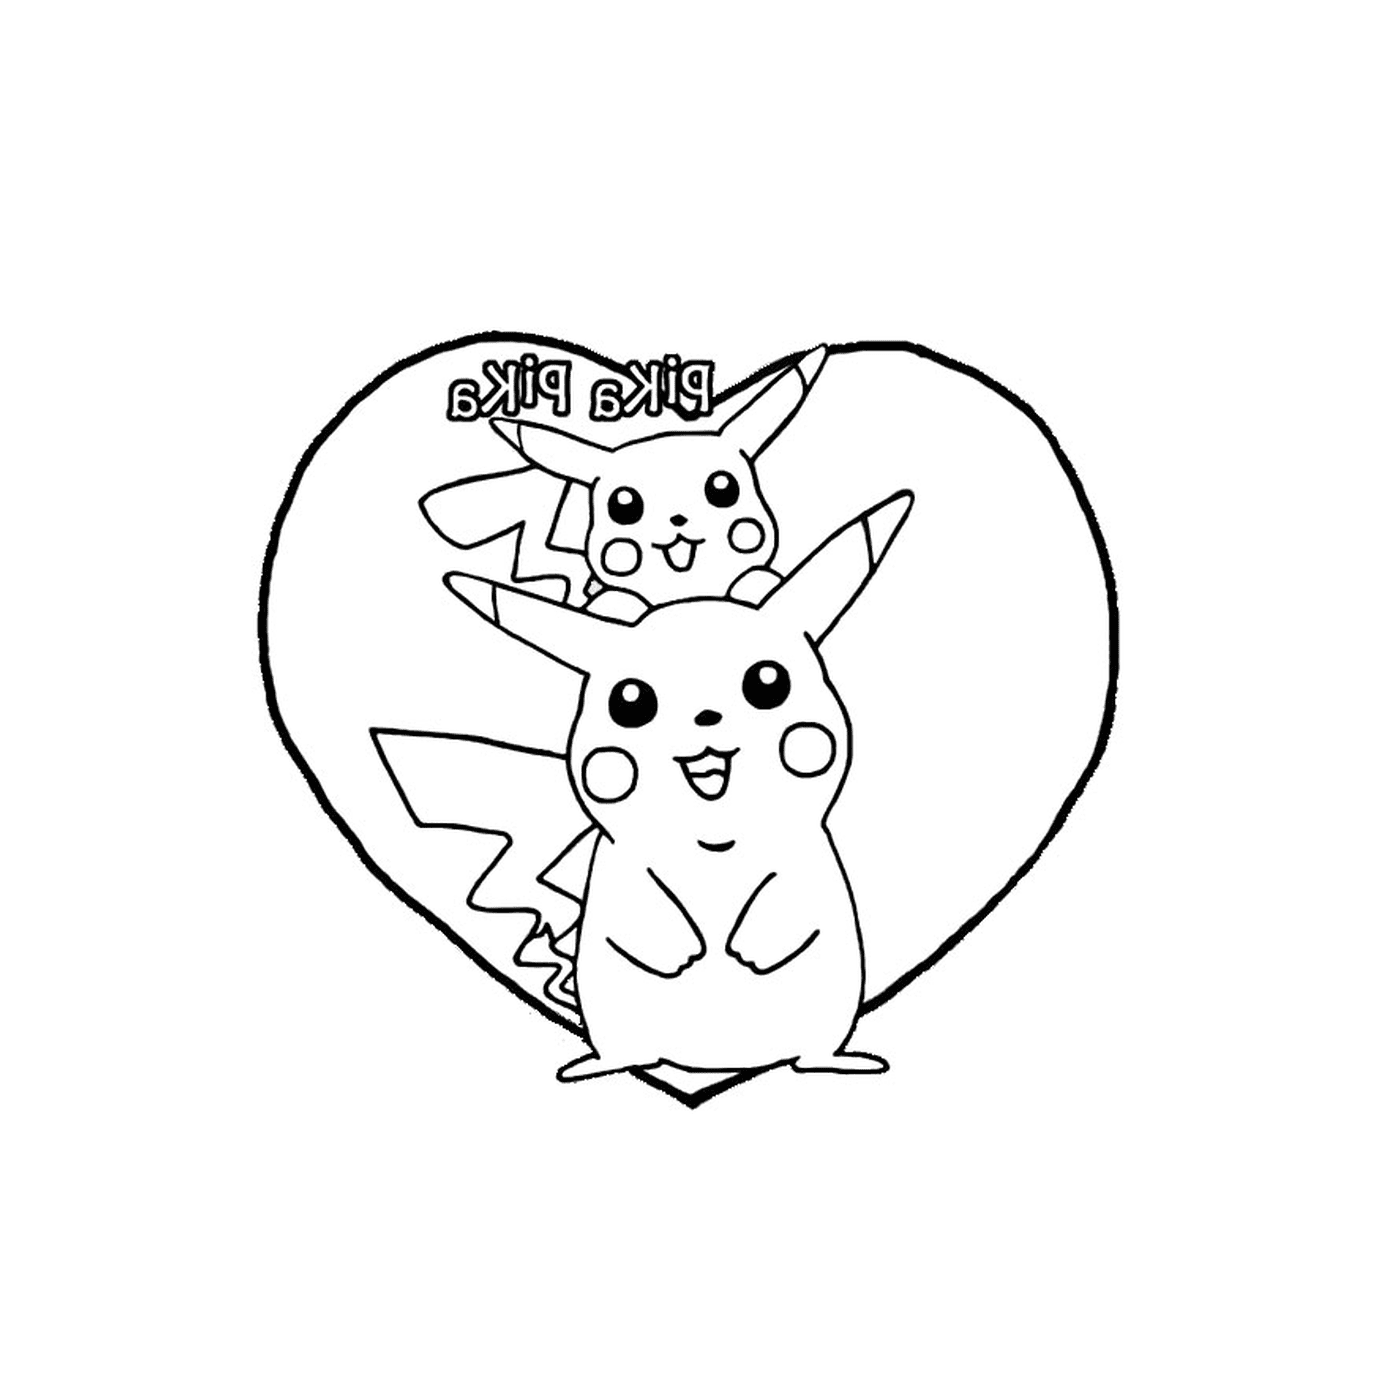  Pikachu y el amor en el corazón 